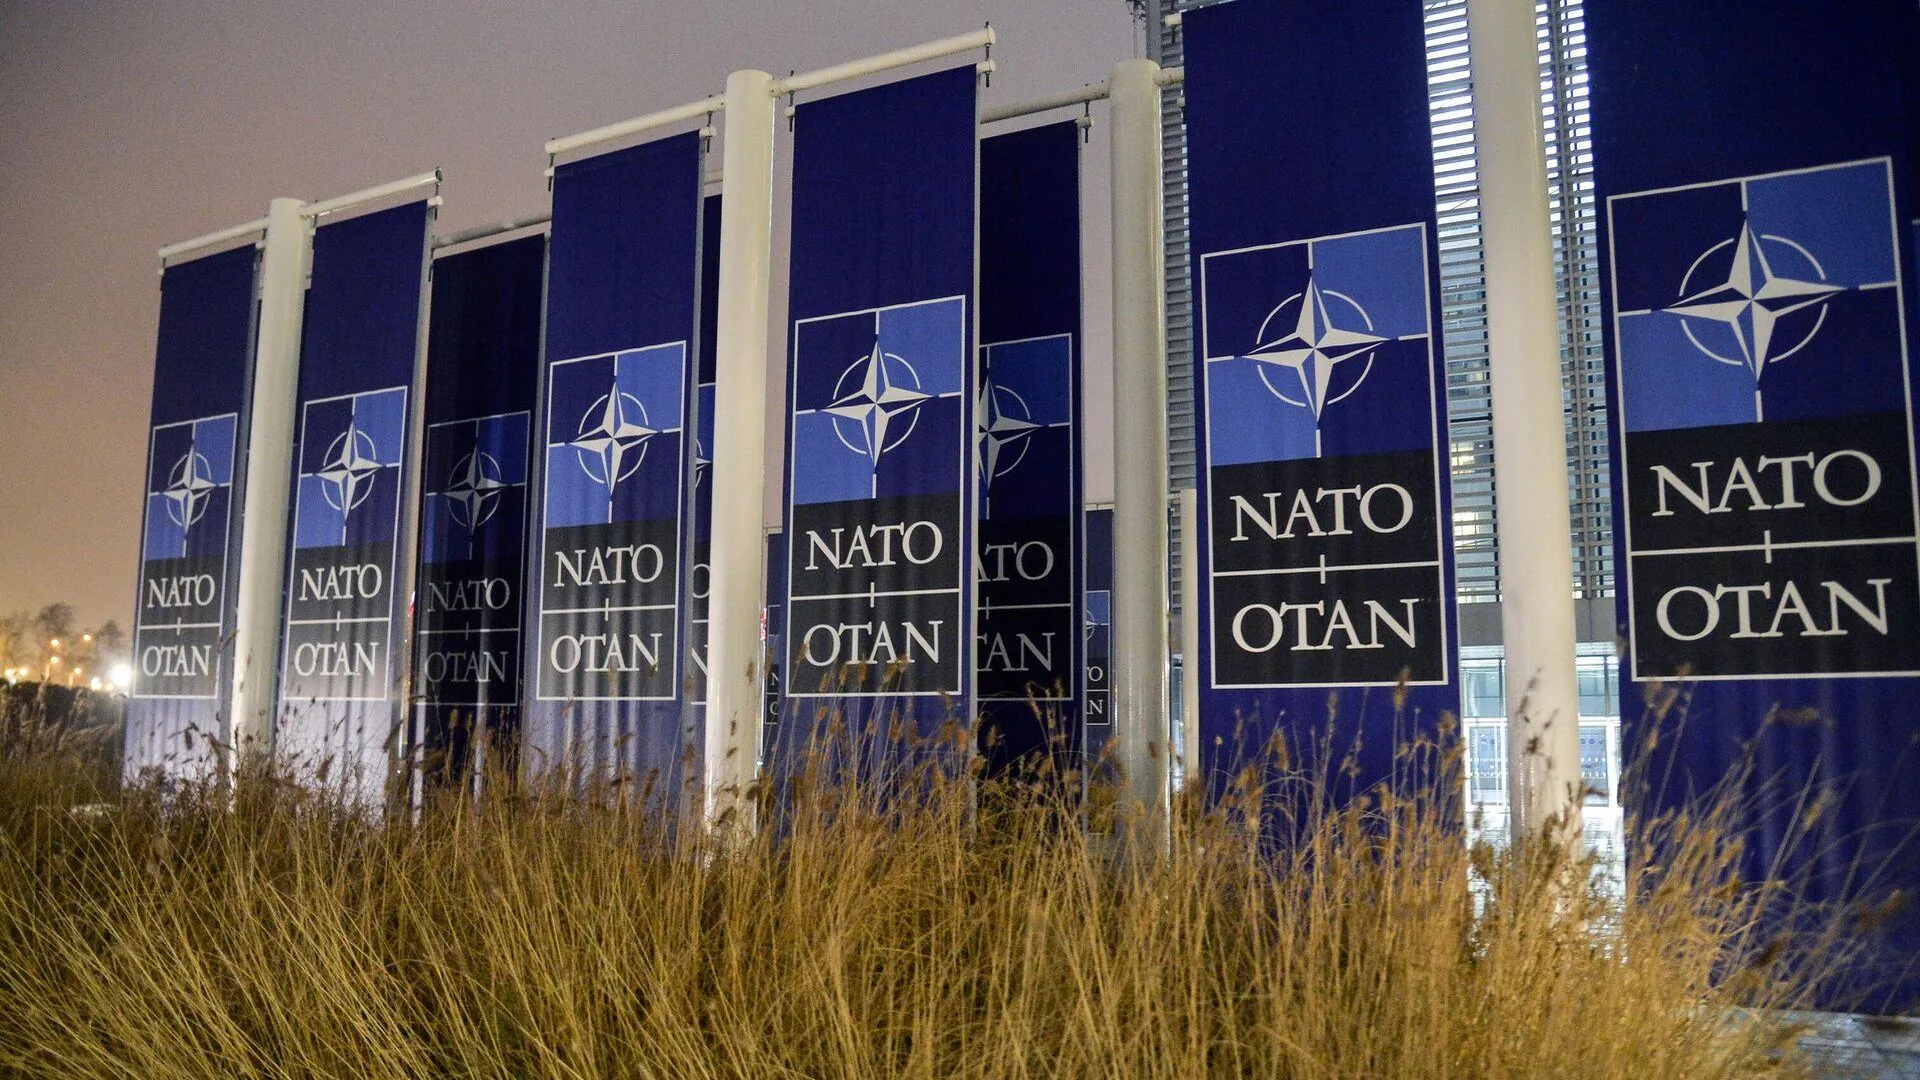 Такер Карлсон потребовал срочно распустить НАТО